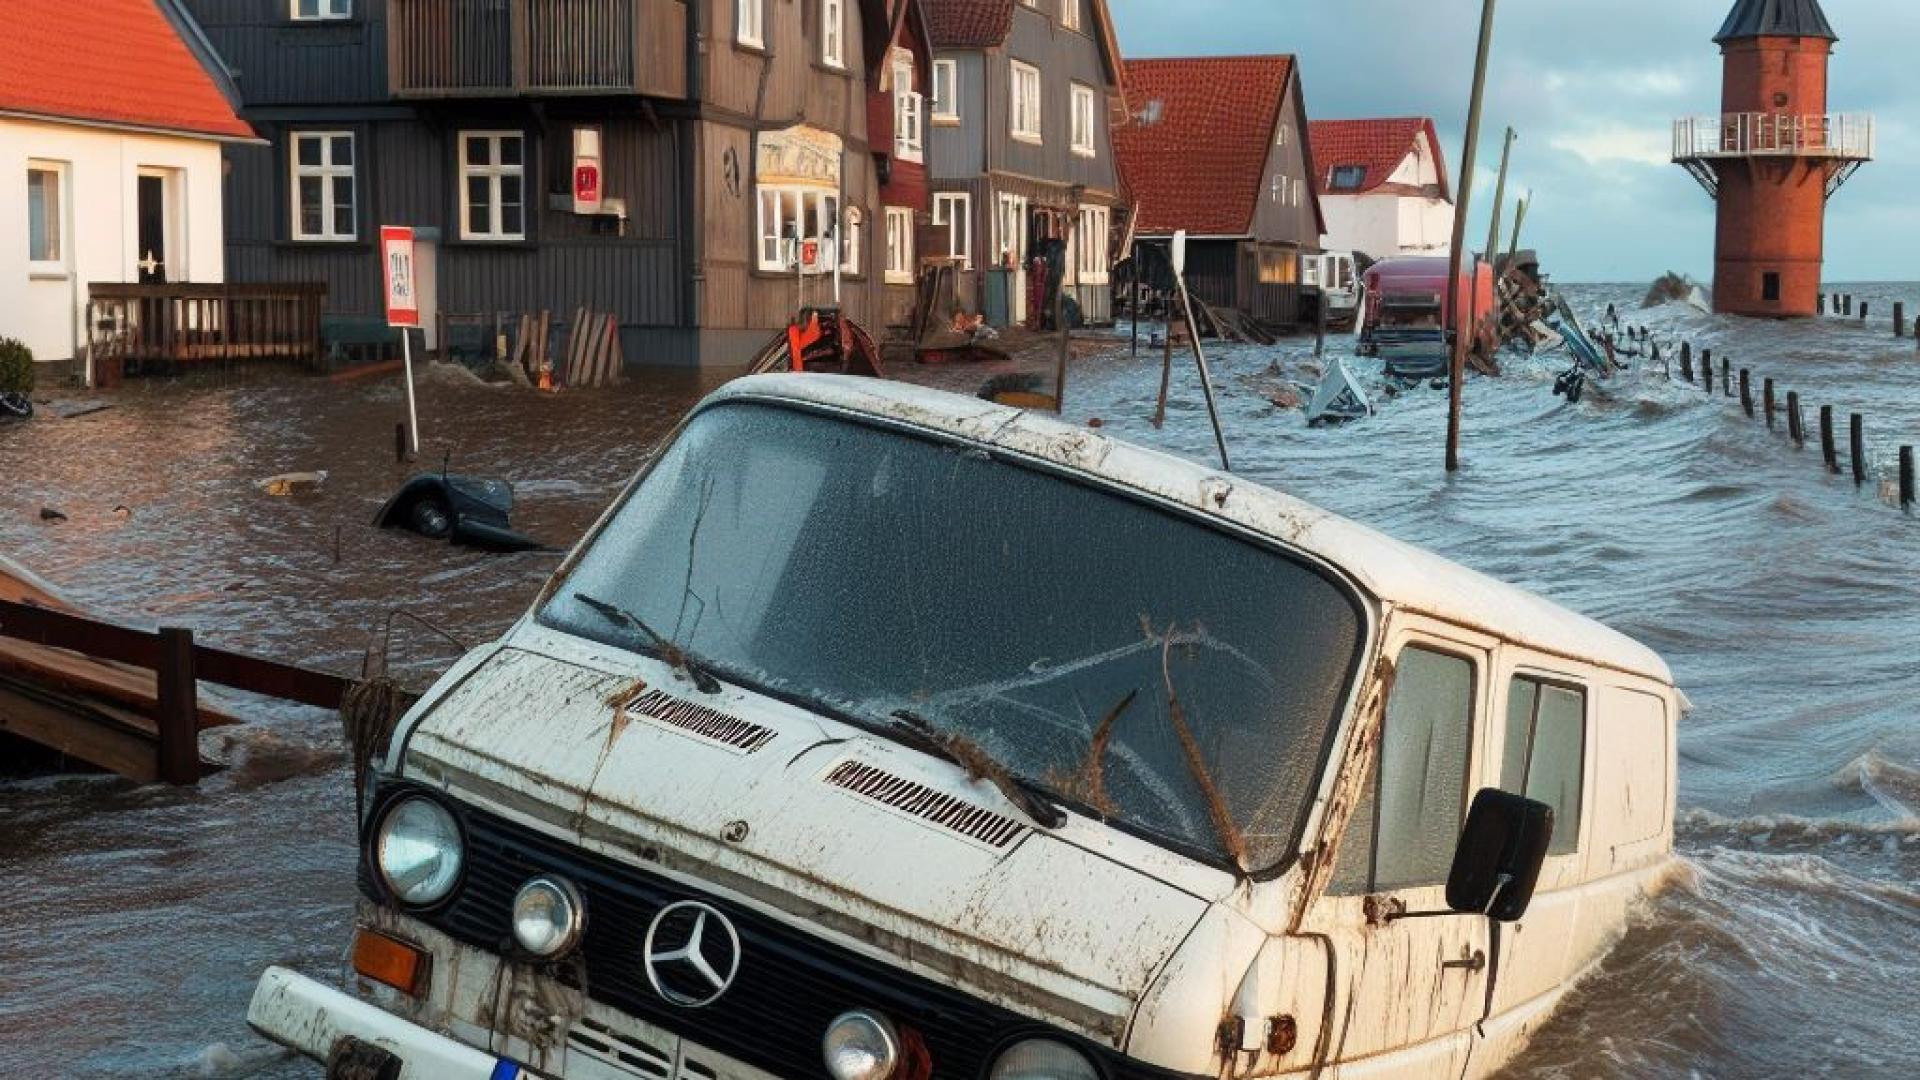 Das Bild zeigt eine Szene an der Ostseeküste, wo eine Sturmflut und ein Hochwasser viele Fahrzeuge beschädigt haben. Einige Autos sind teilweise oder ganz unter Wasser getaucht, andere sind umgestürzt oder haben Schäden an der Karosserie